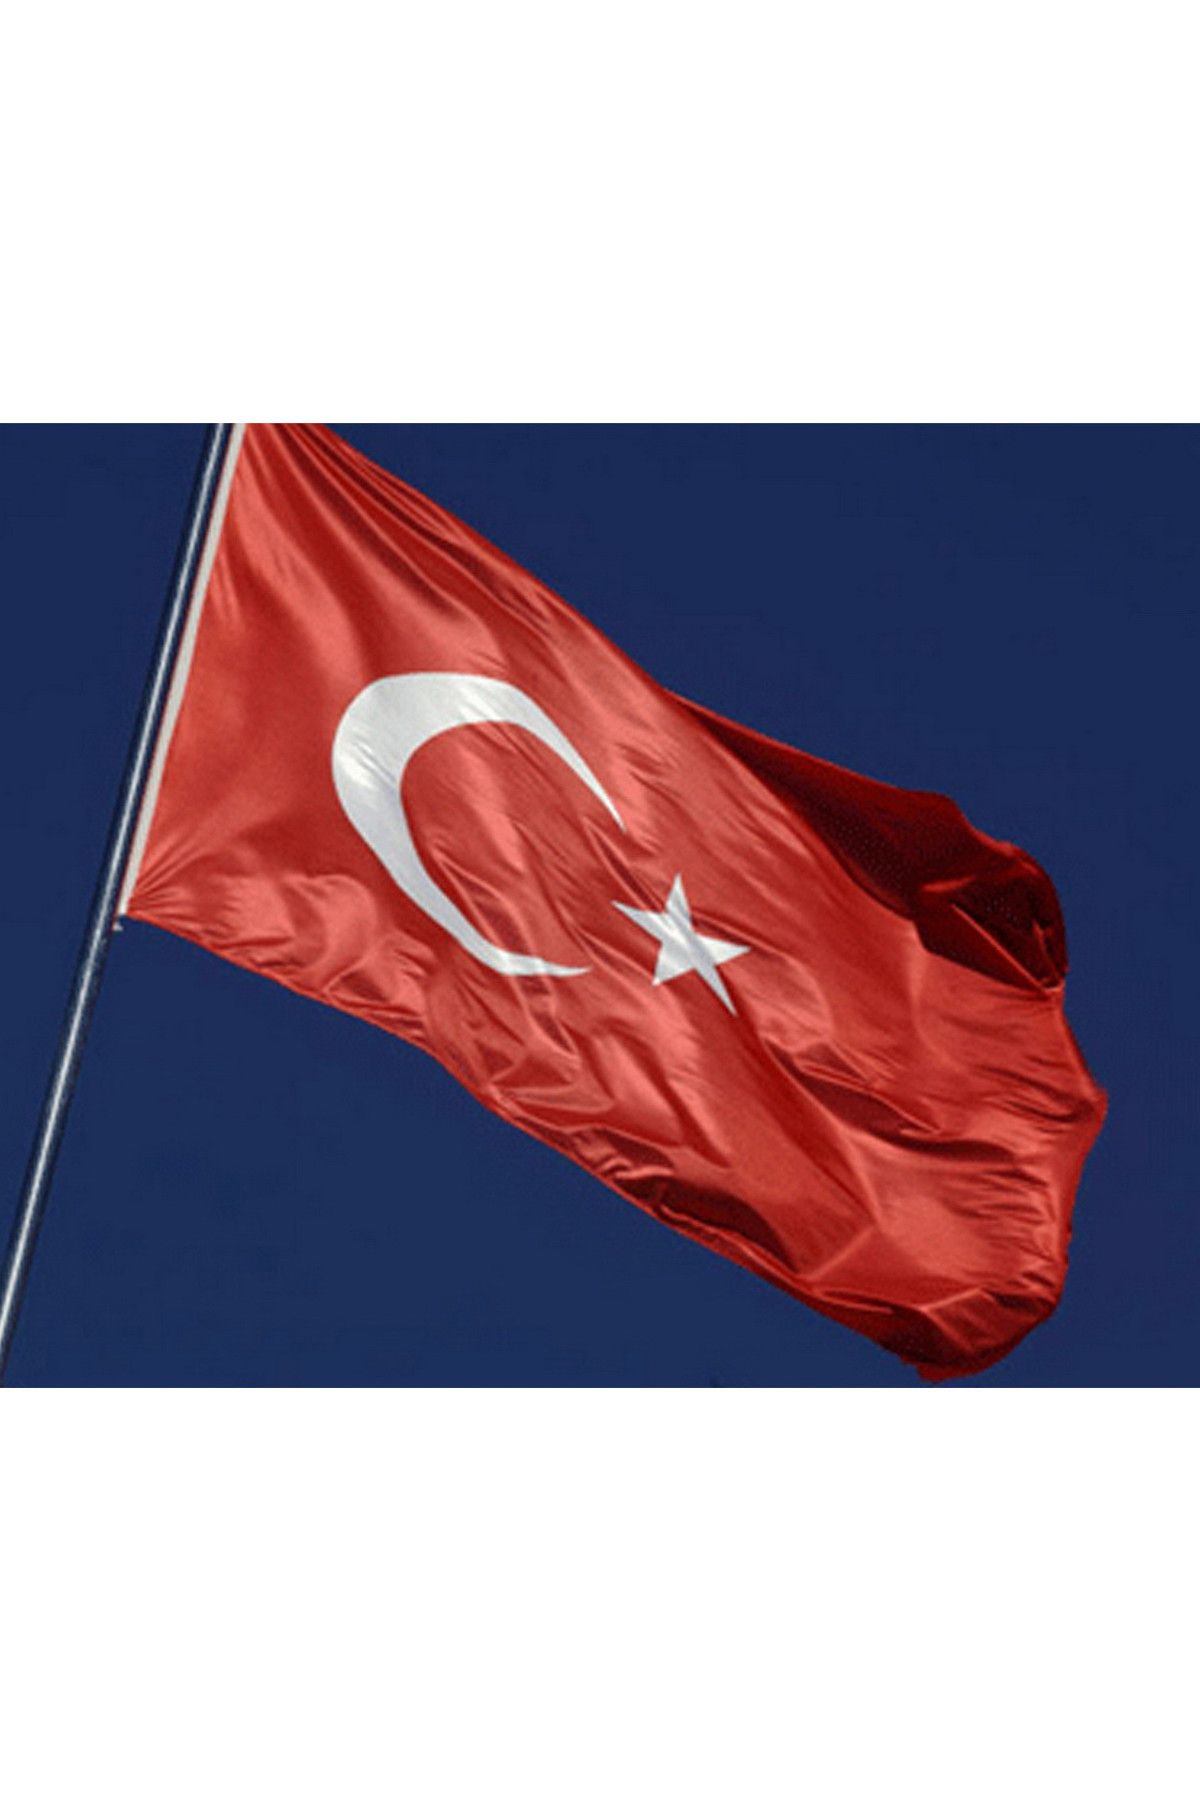 Buket Türk Bayrağı 400x600 cm Özel Raşel Kumaş Bayrak (BKT-128)